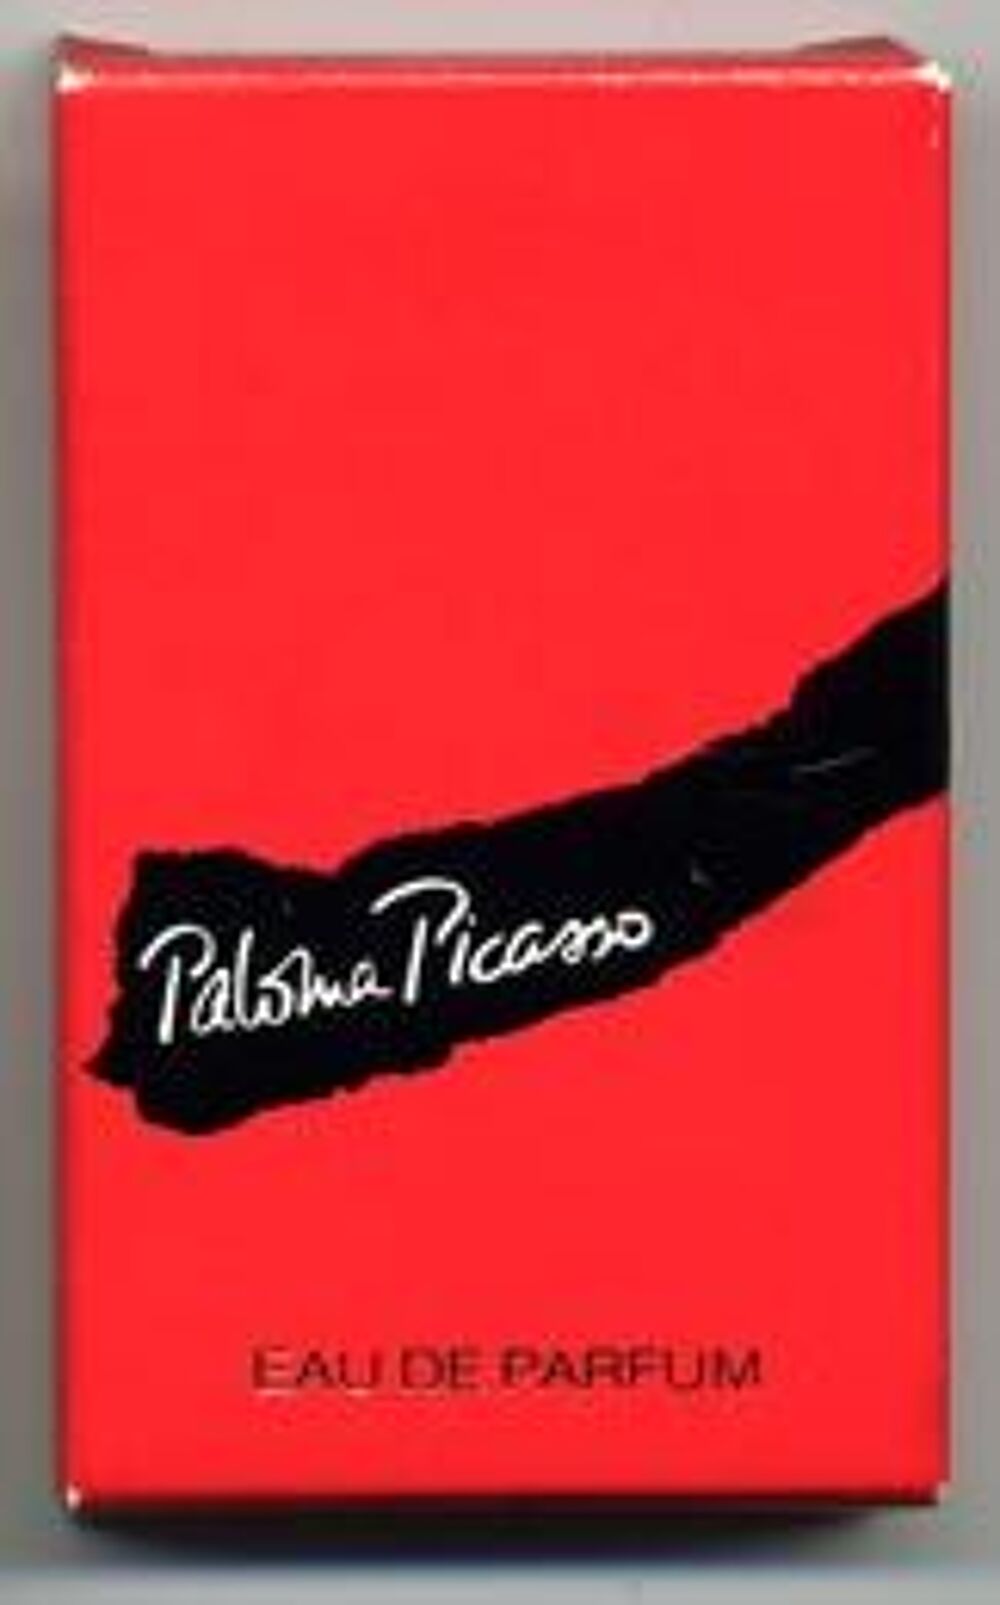 Echantillon Paloma Picasso 